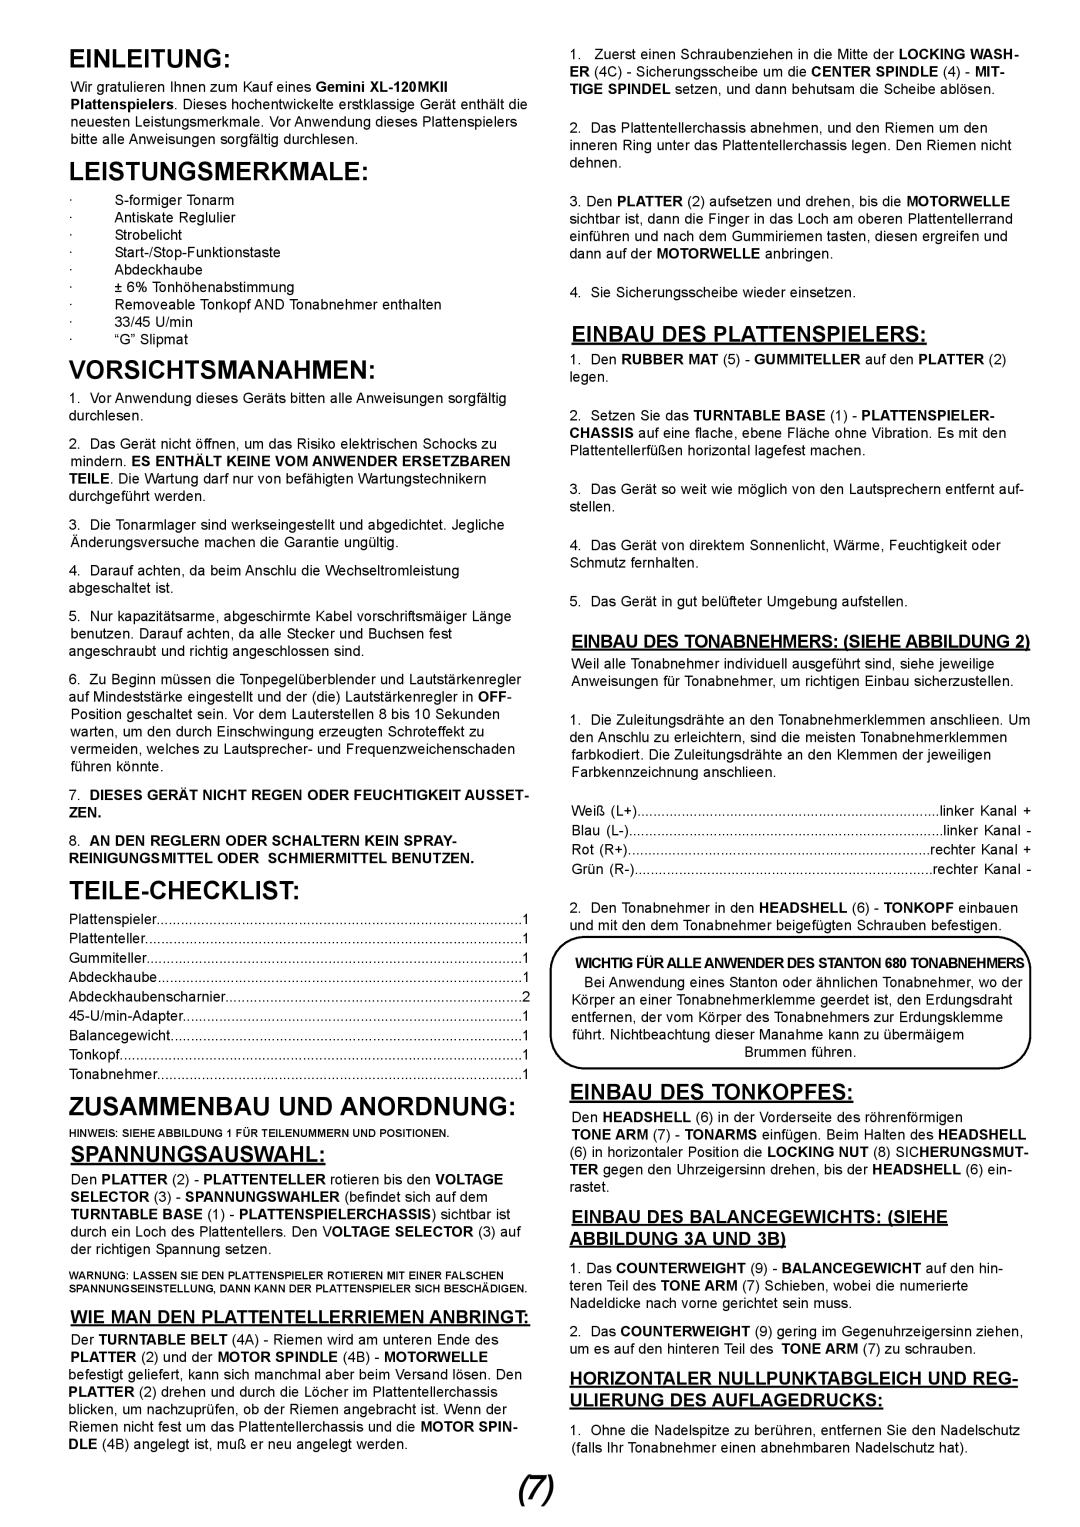 Gemini XL-120MKII manual Einleitung, Leistungsmerkmale, Vorsichtsmanahmen, Teile-Checklist, Zusammenbau Und Anordnung 